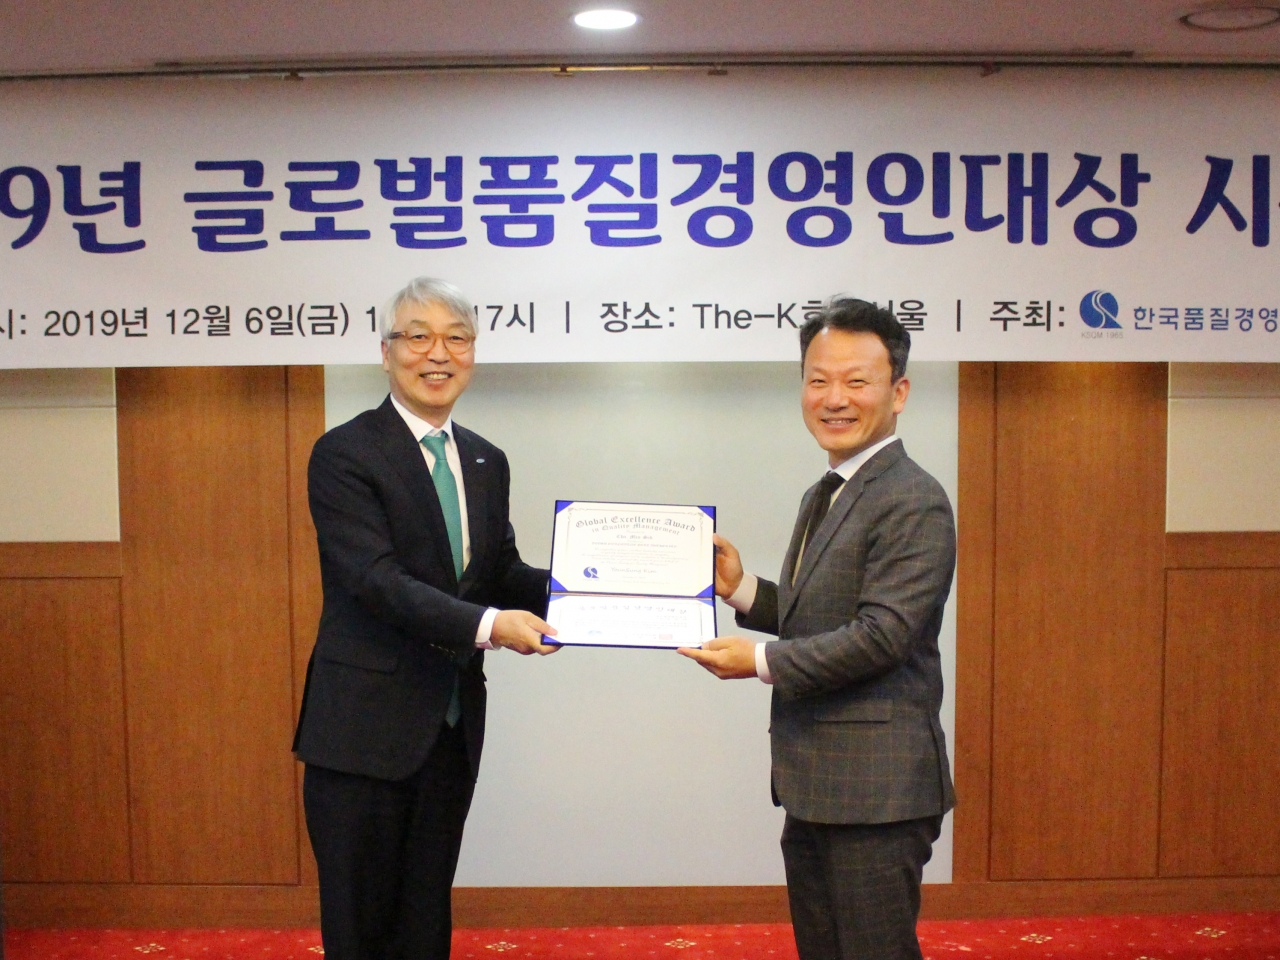 지난 6일 한국품질경영학회 주관으로 열린 ‘2019 글로벌 품질경영인 대상’ 시상식에서 차민식 여수광양항만공사 사장(왼쪽)이 상패를 수여받고 있다.